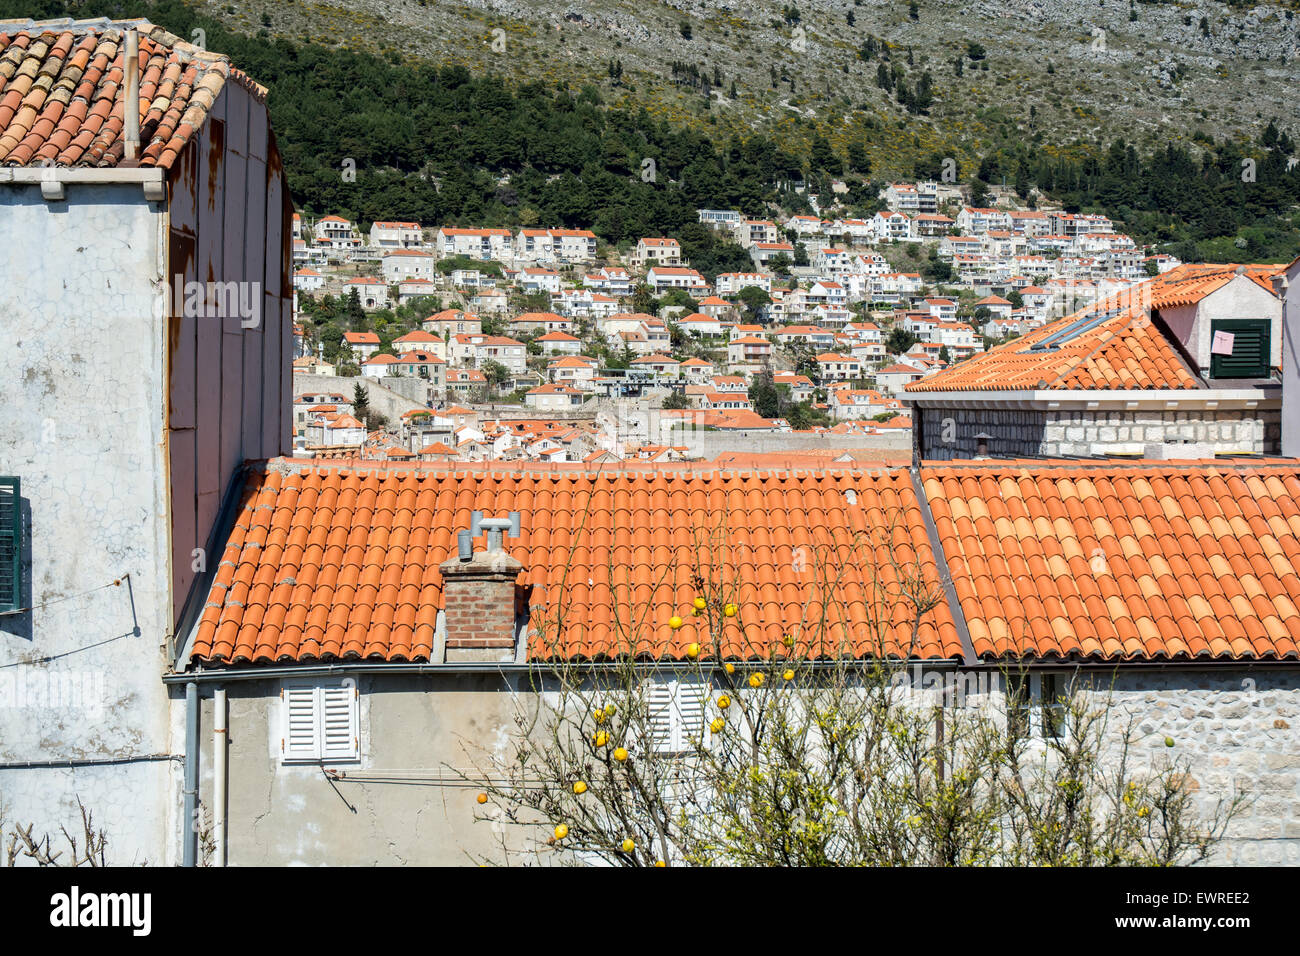 Piastrelle colorate di tetti di edifici in città vecchia con gli altri edifici della città in background, Dubrovnik, Croazia Foto Stock